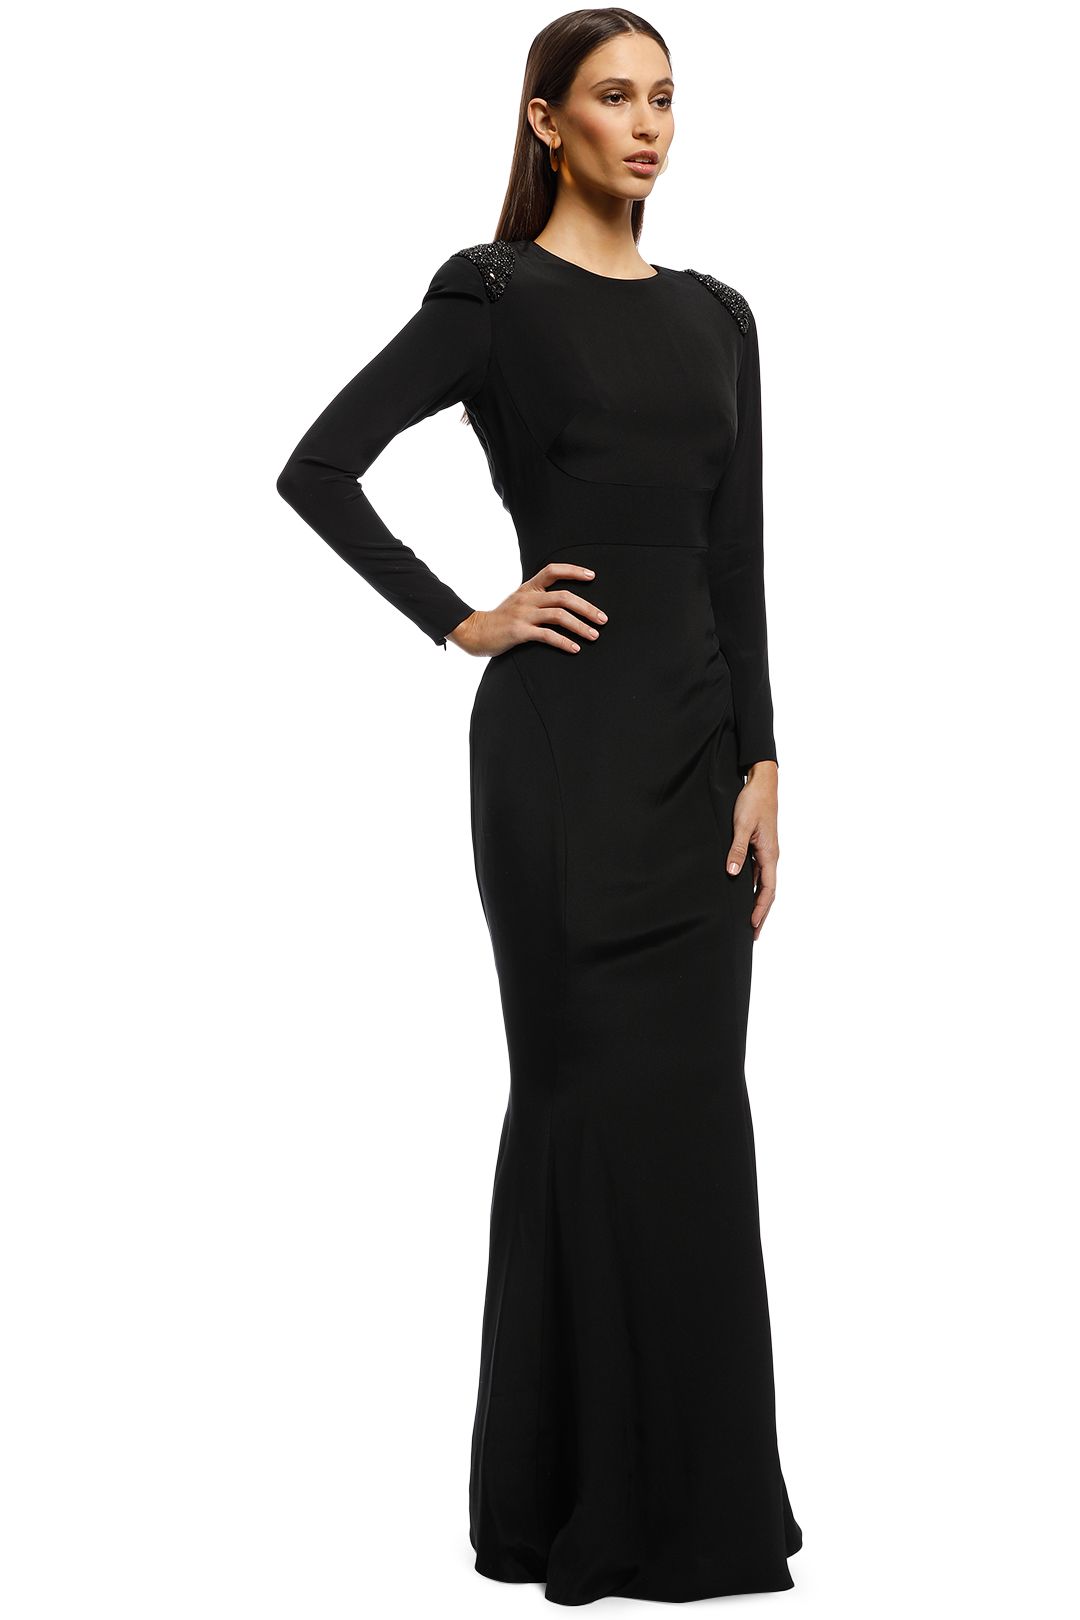 Starla Gown - Black by Rachel Gilbert for Rent | GlamCorner